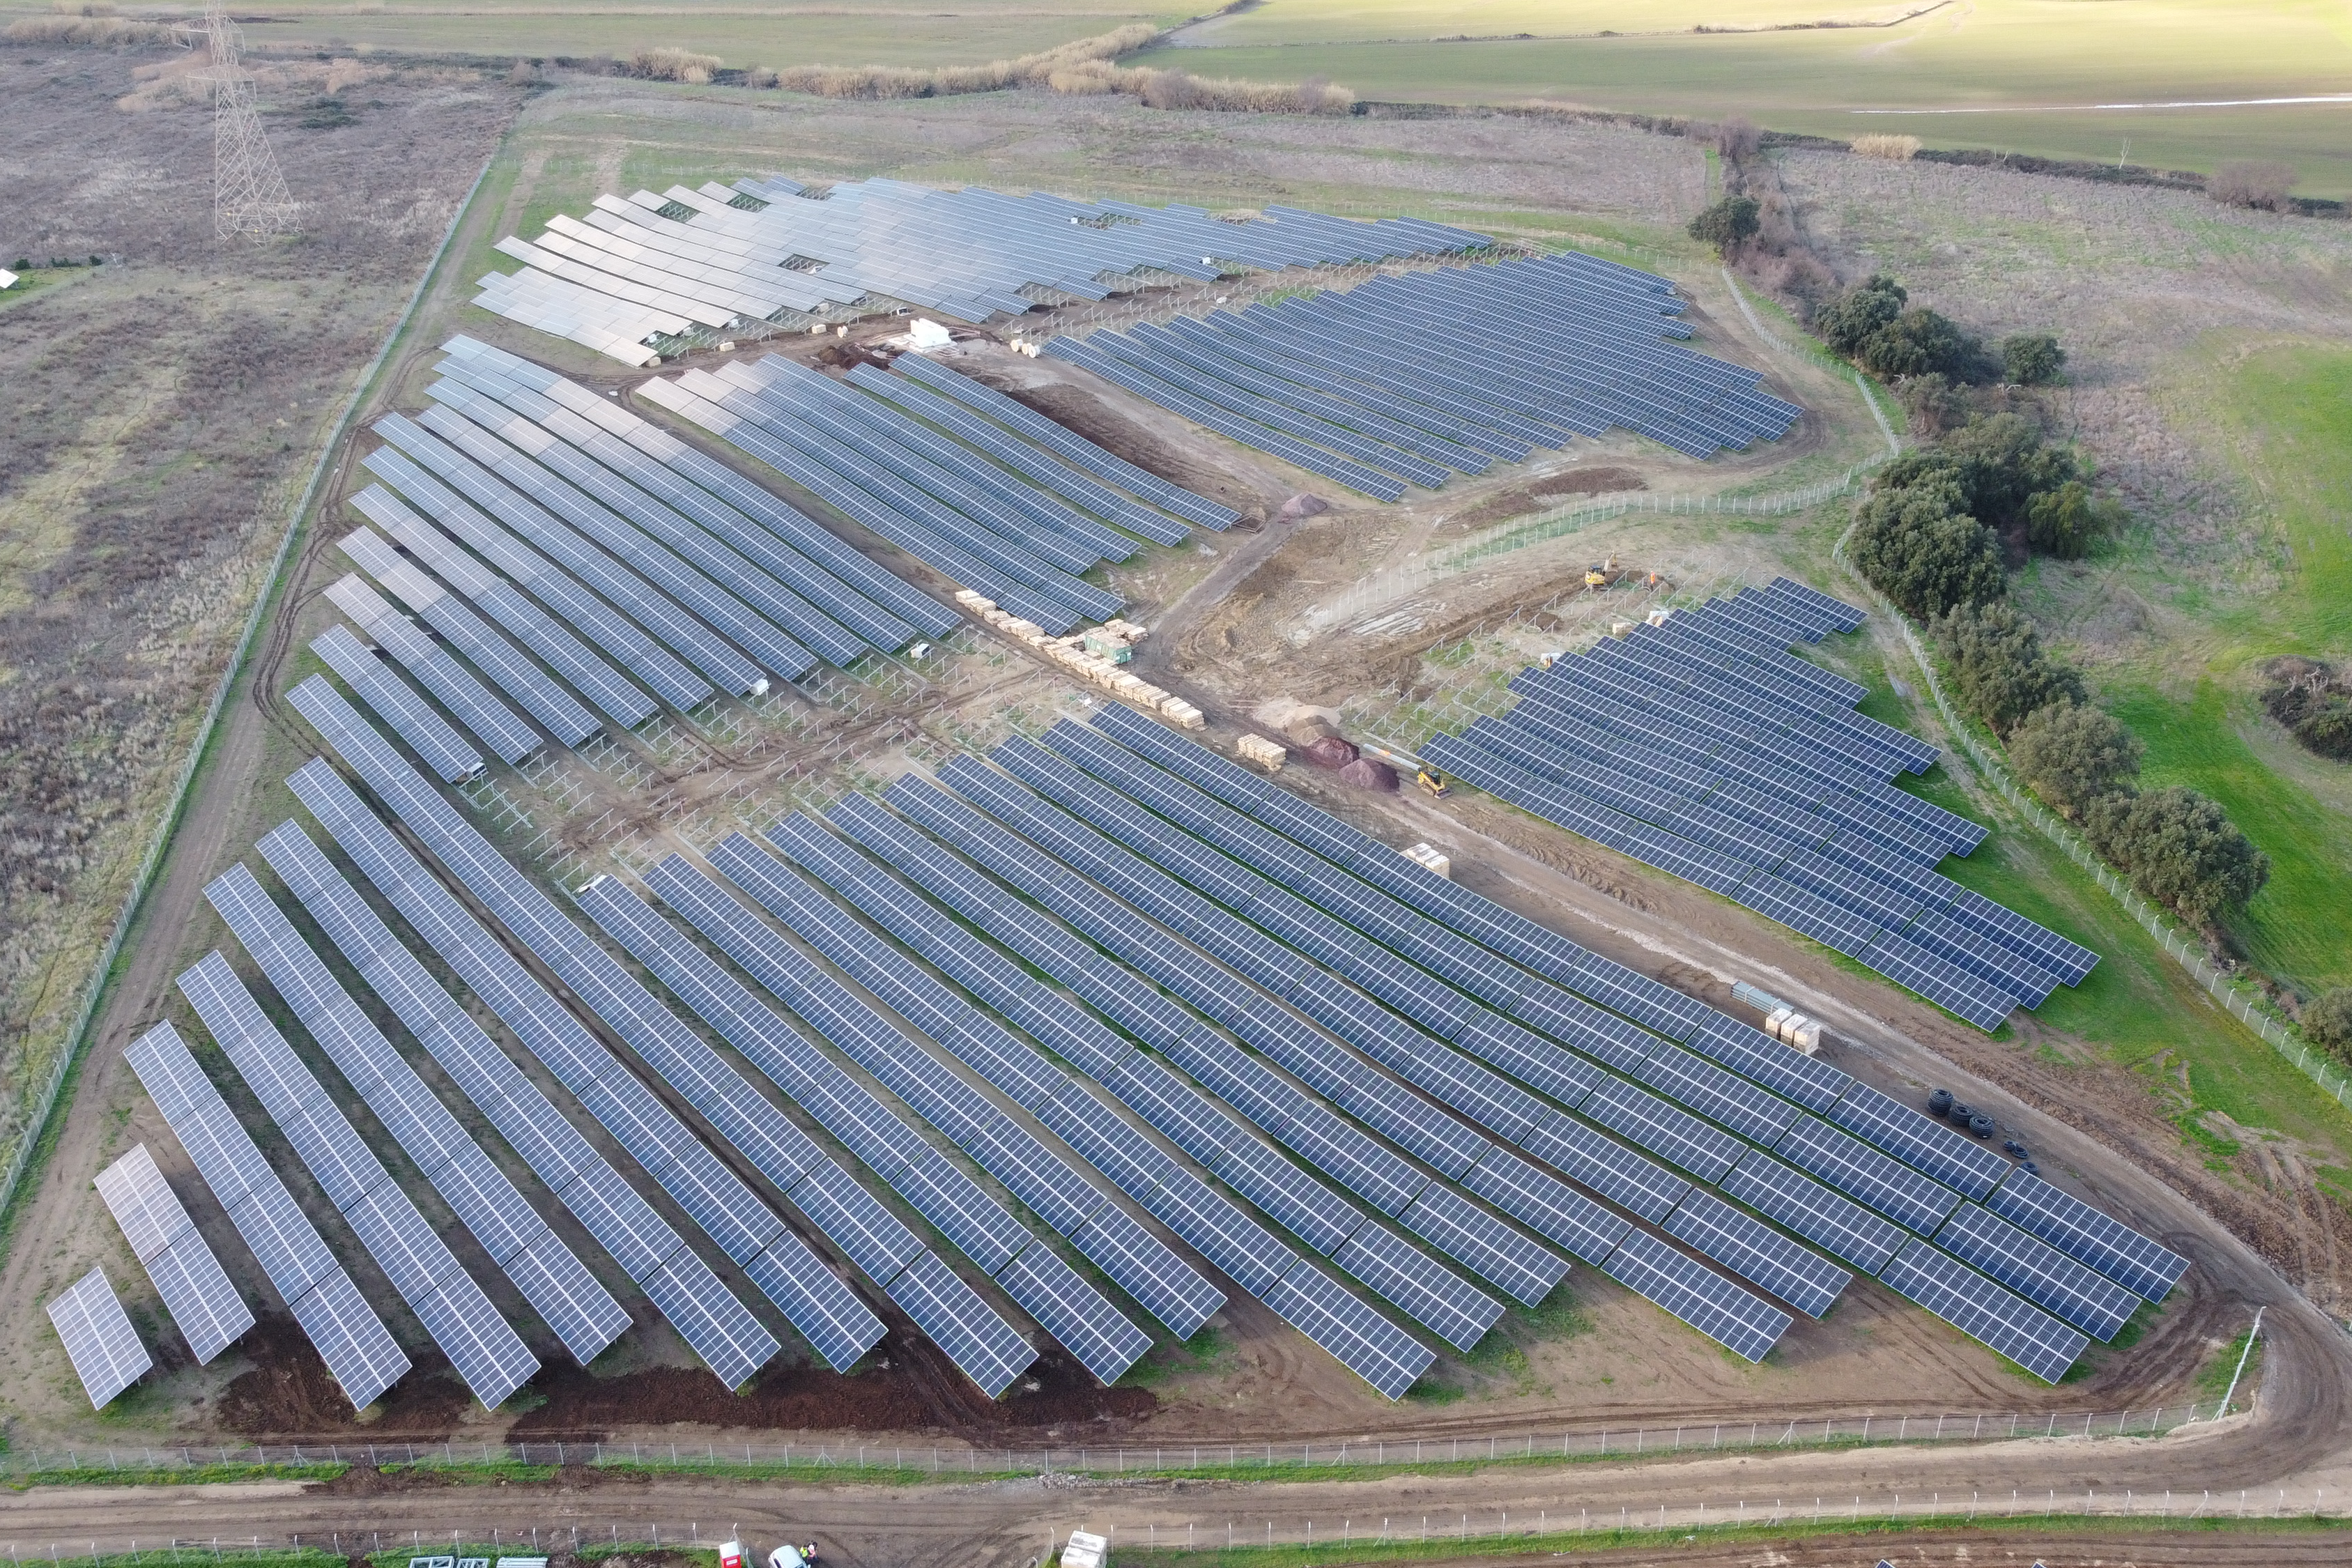 Iberdrola reforça sua presença na Itália com a construção de sua primeira instalação fotovoltaica no país